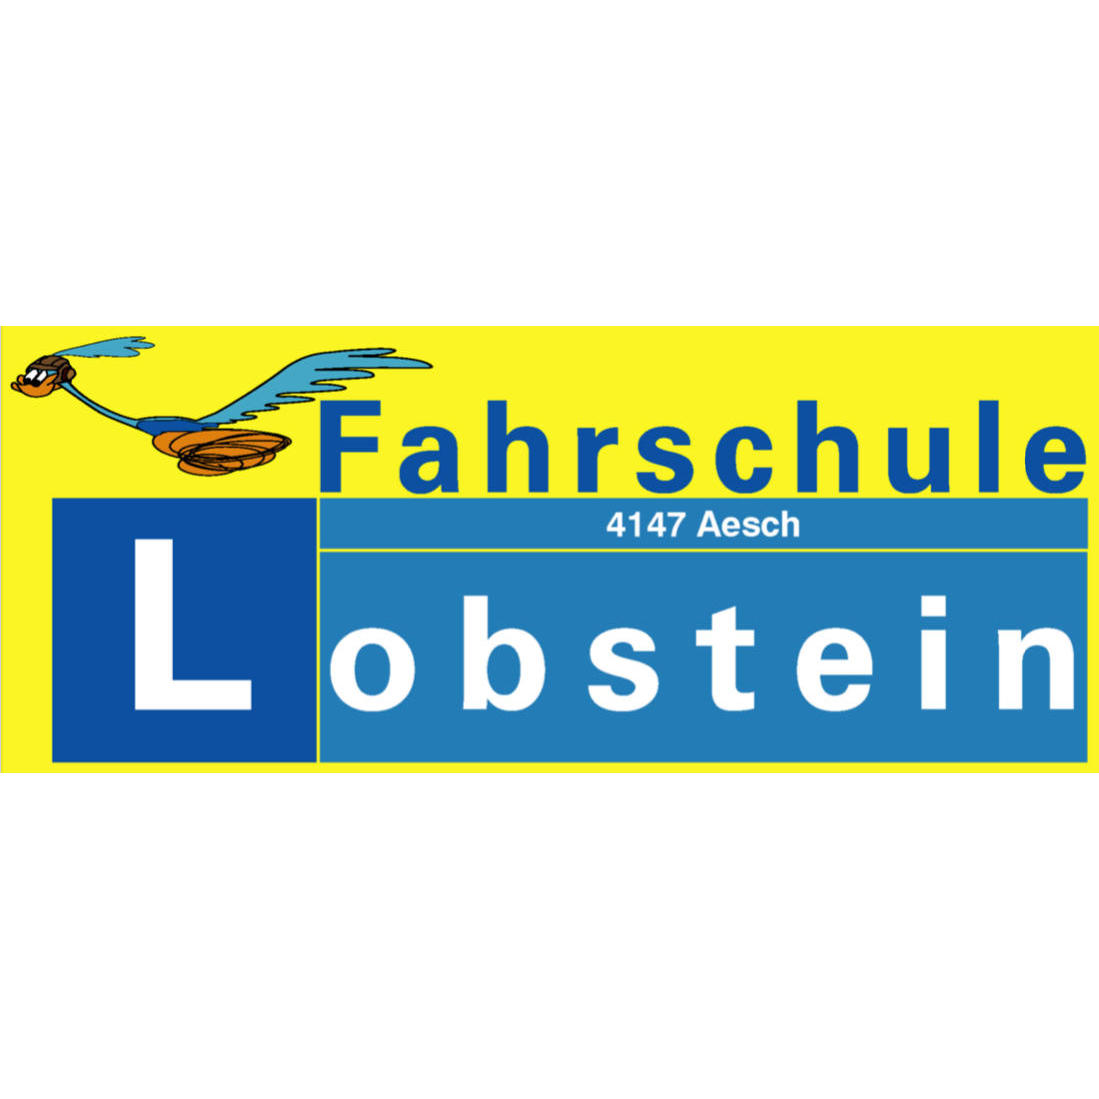 Fahrschule Lobstein Logo